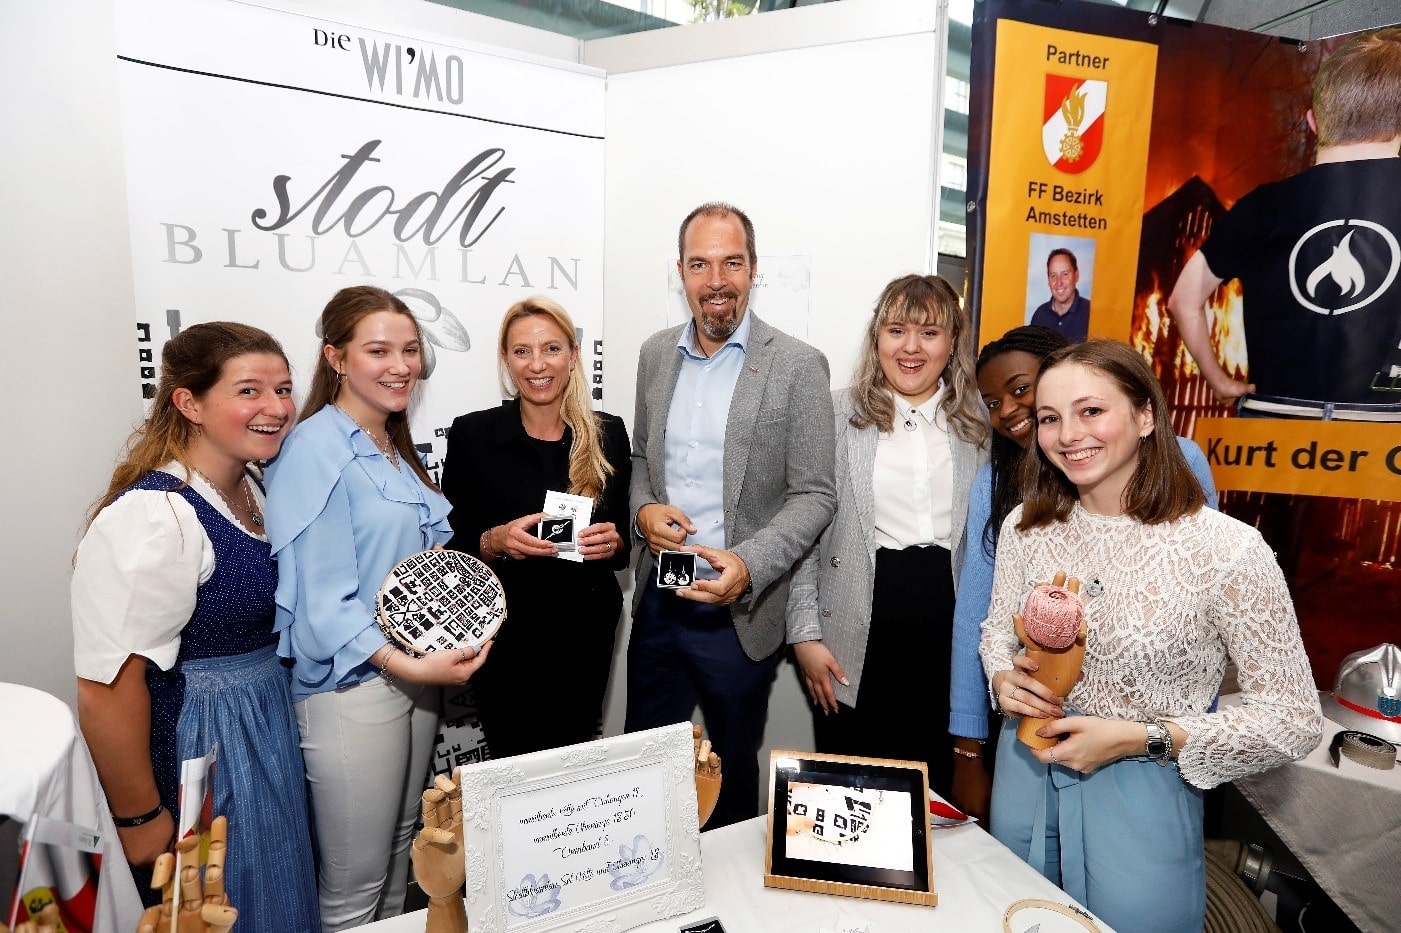 Die Gewinner: Junior Company Stodtbluamlan mit Mag. Dr. Juliane Bogner-Strauß und Mag. Jürgen Roth.